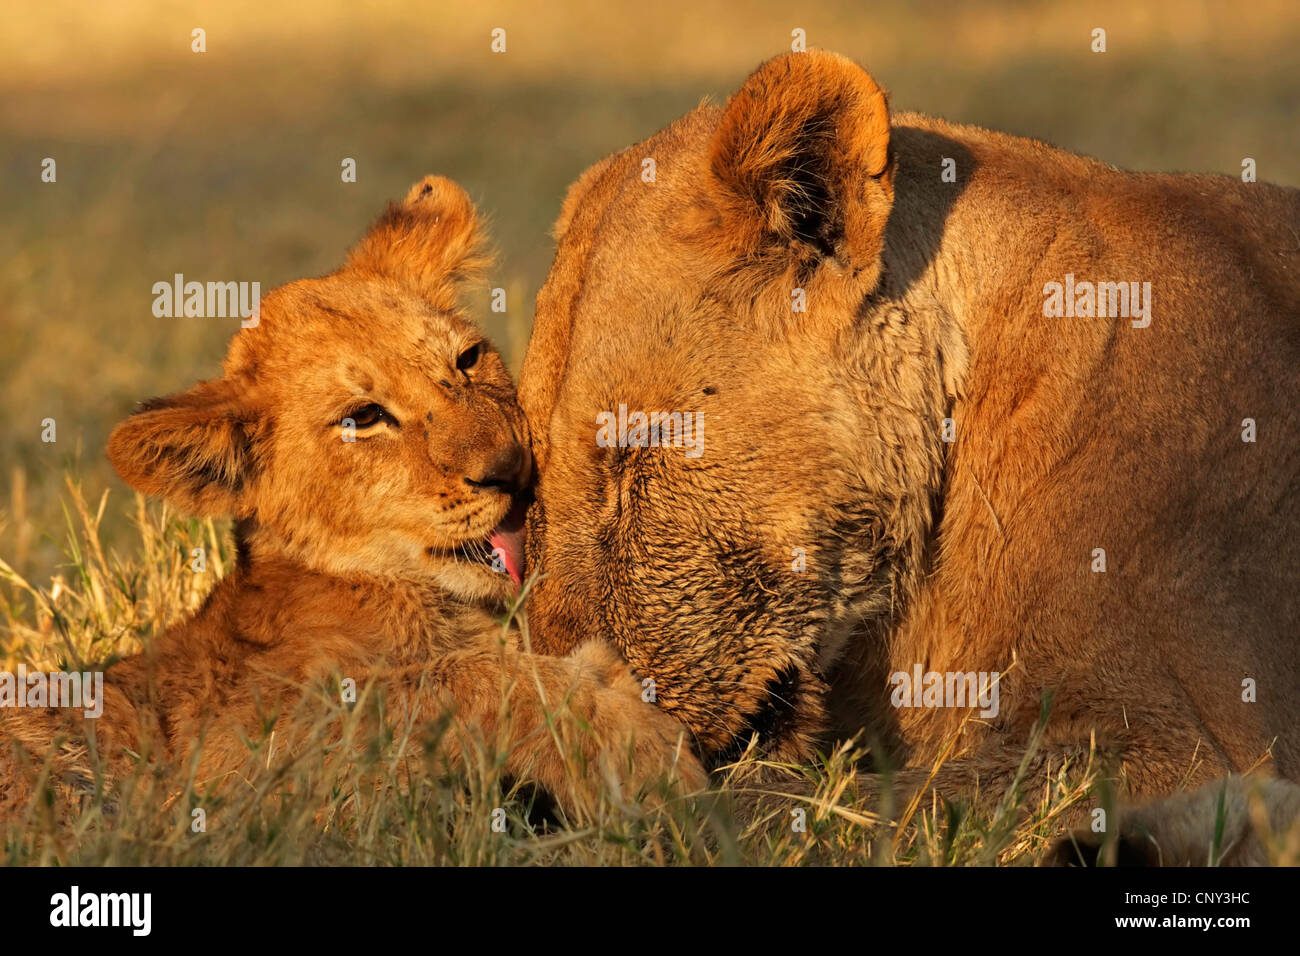 Lion (Panthera leo), Lionne &AMP ; d'oursons, Botswana, Chobe National Park Banque D'Images